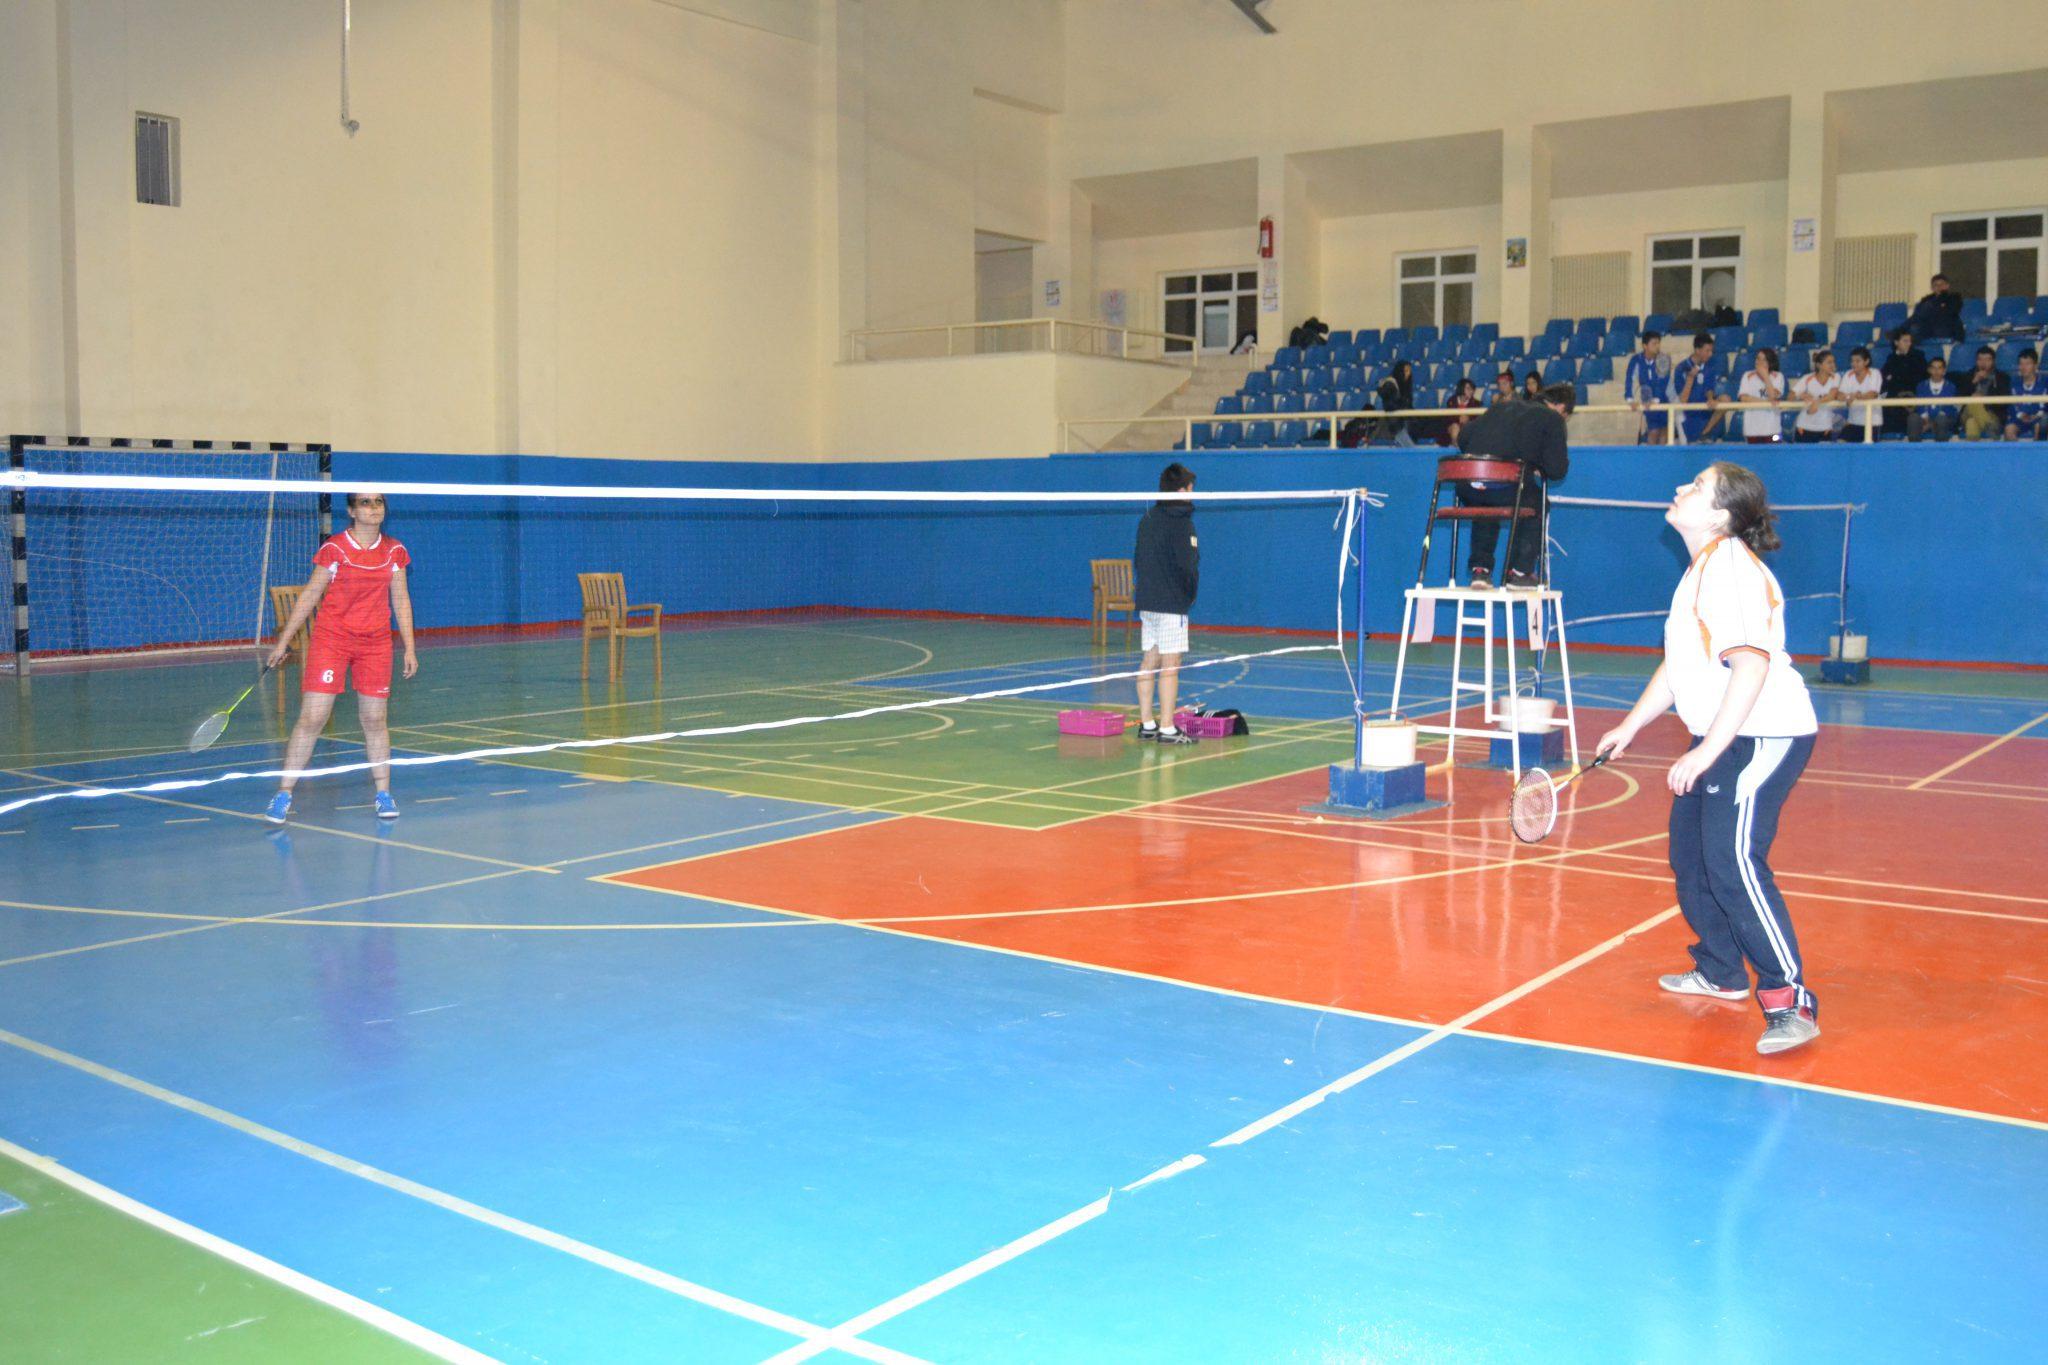 Badmintonda muhteşem çekişme - Kırıkkale Haber, Son Dakika Kırıkkale Haberleri